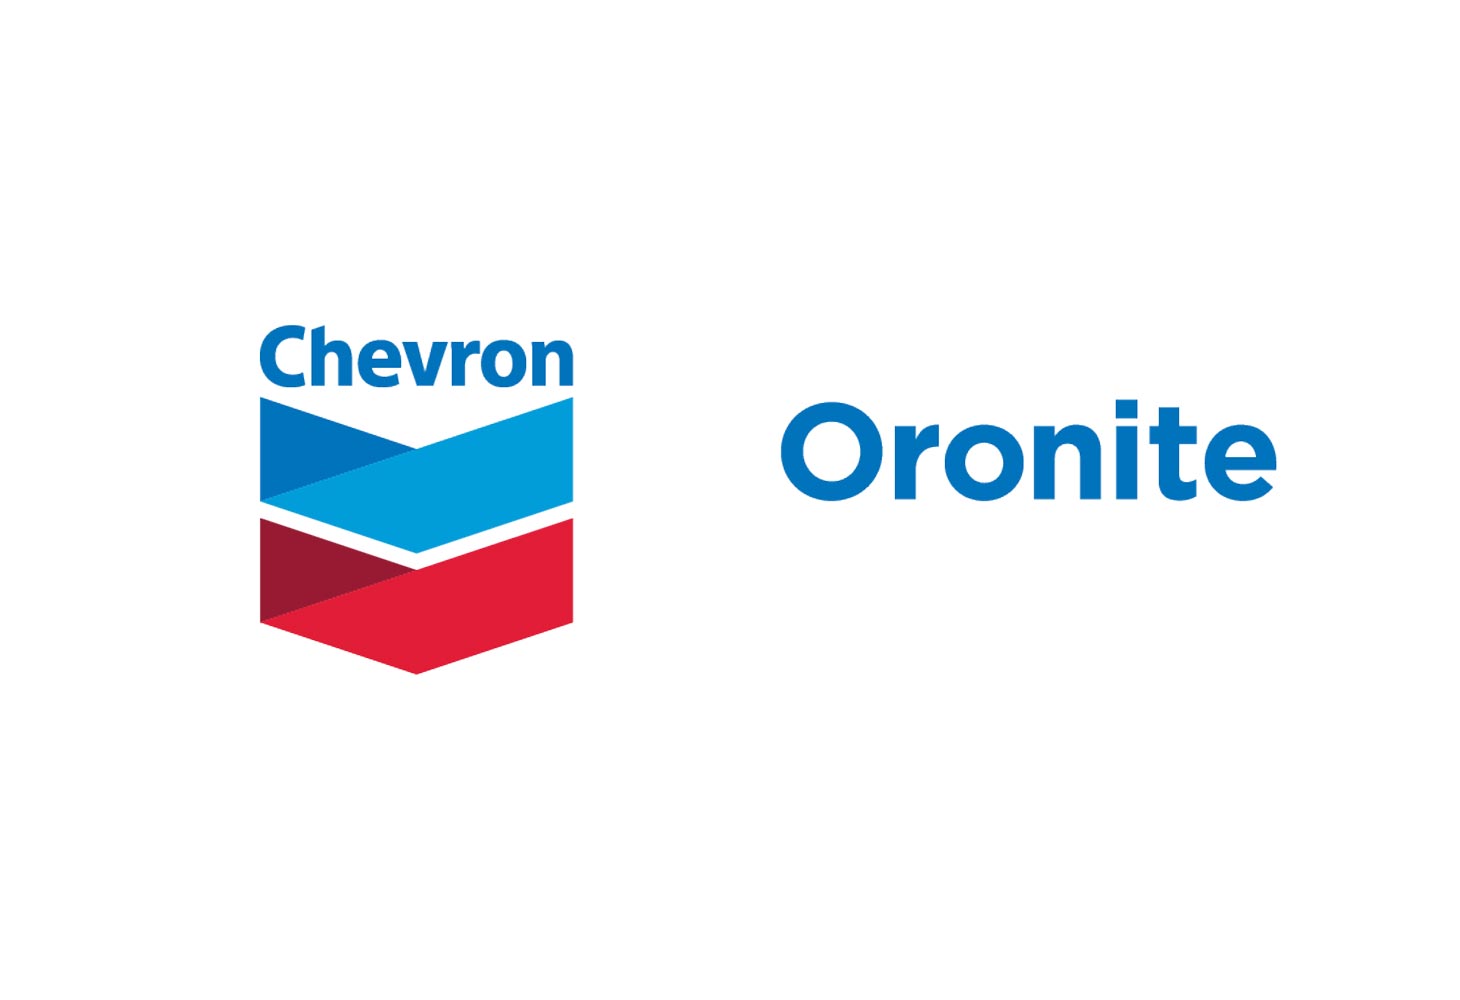 Chevron Oronite and Chevron Base Oils co-sponsor 26th ICIS conference